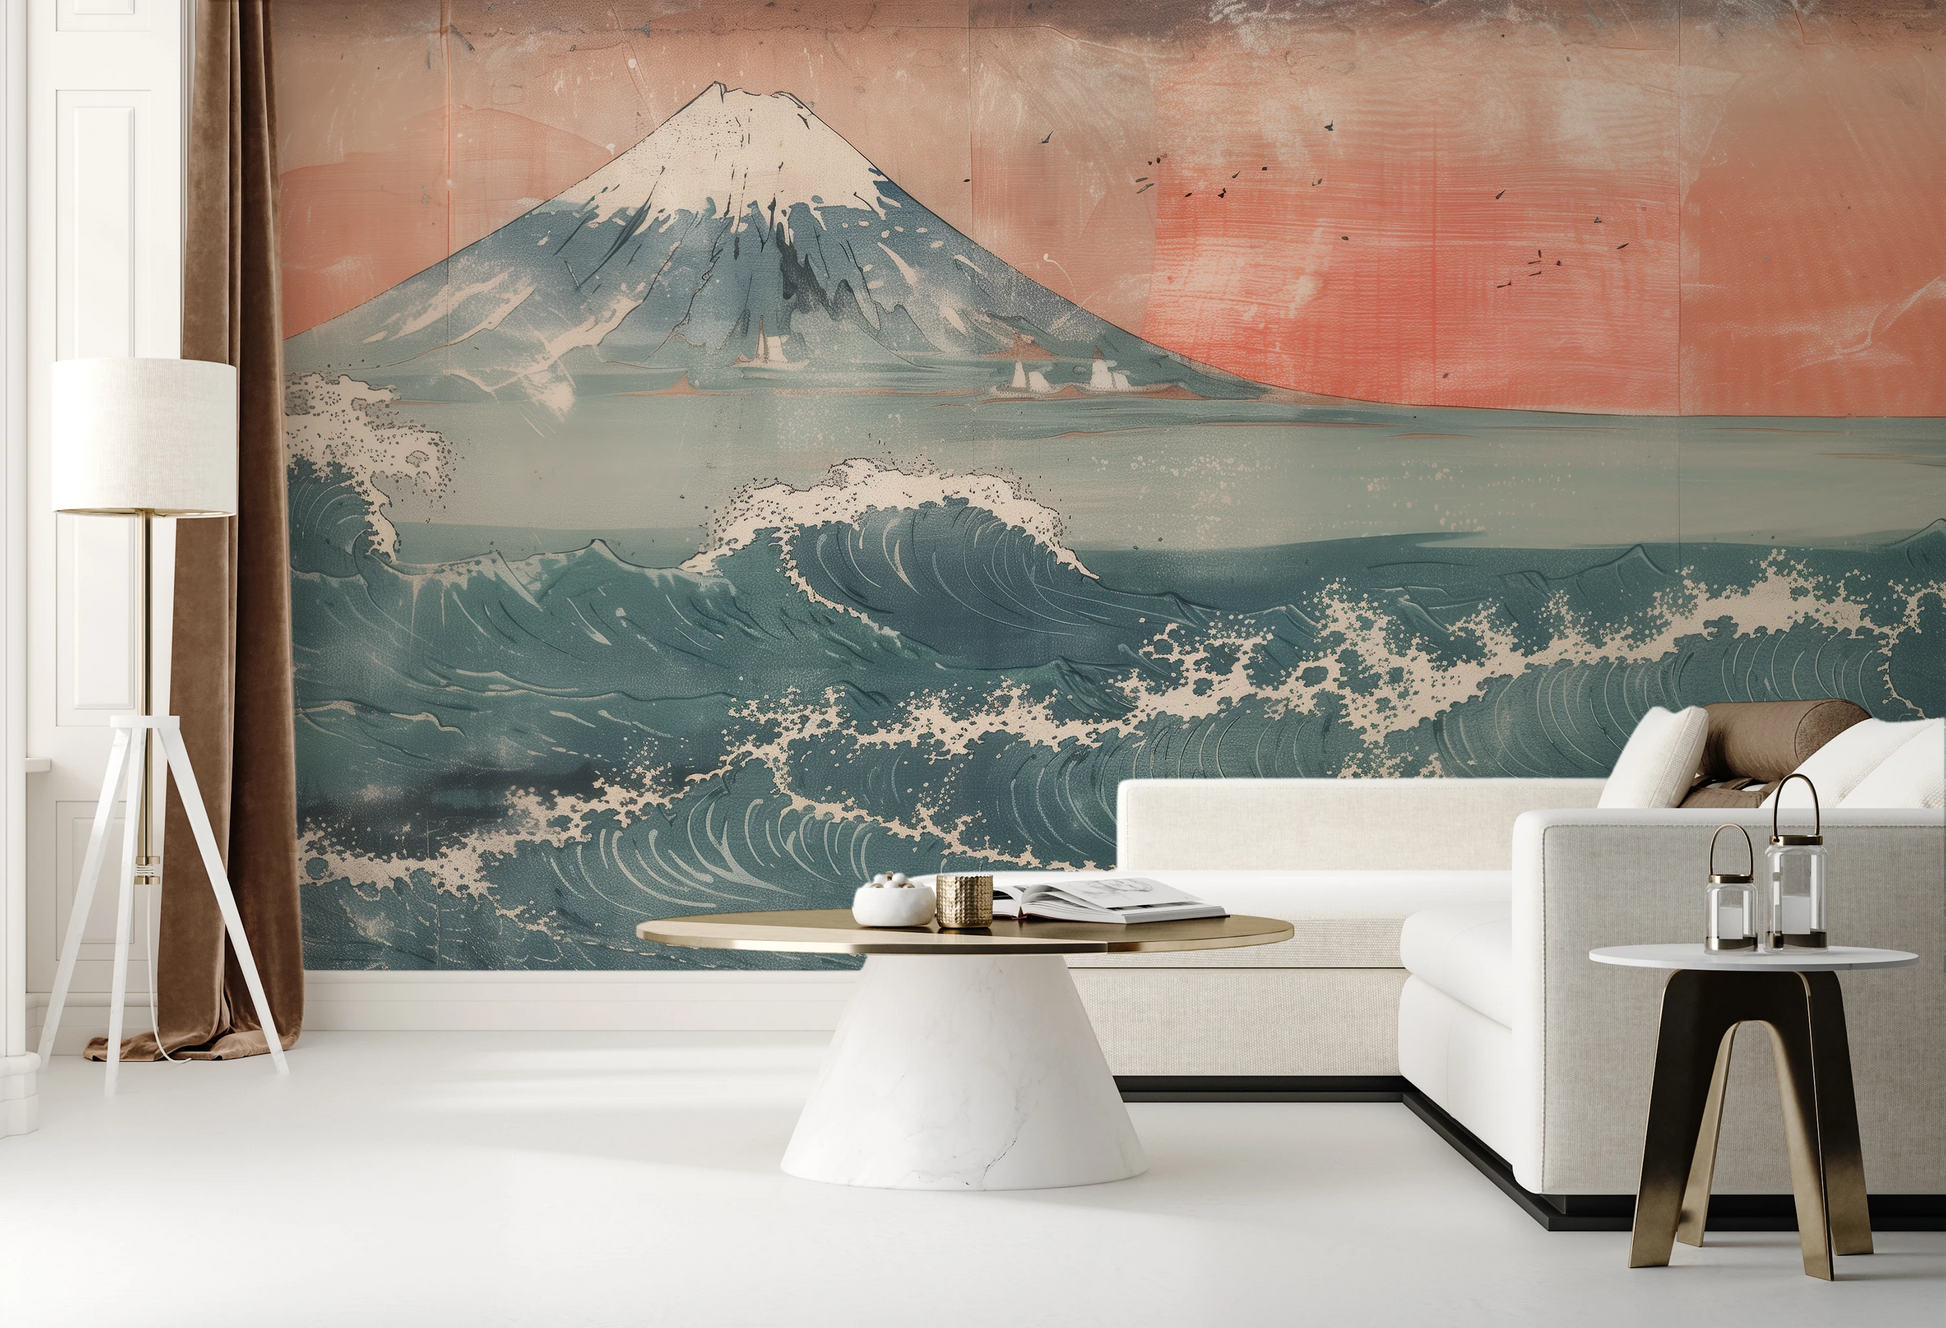 Fototapeta artystyczna o nazwie Fuji's Serenity pokazana w aranżacji wnętrza.